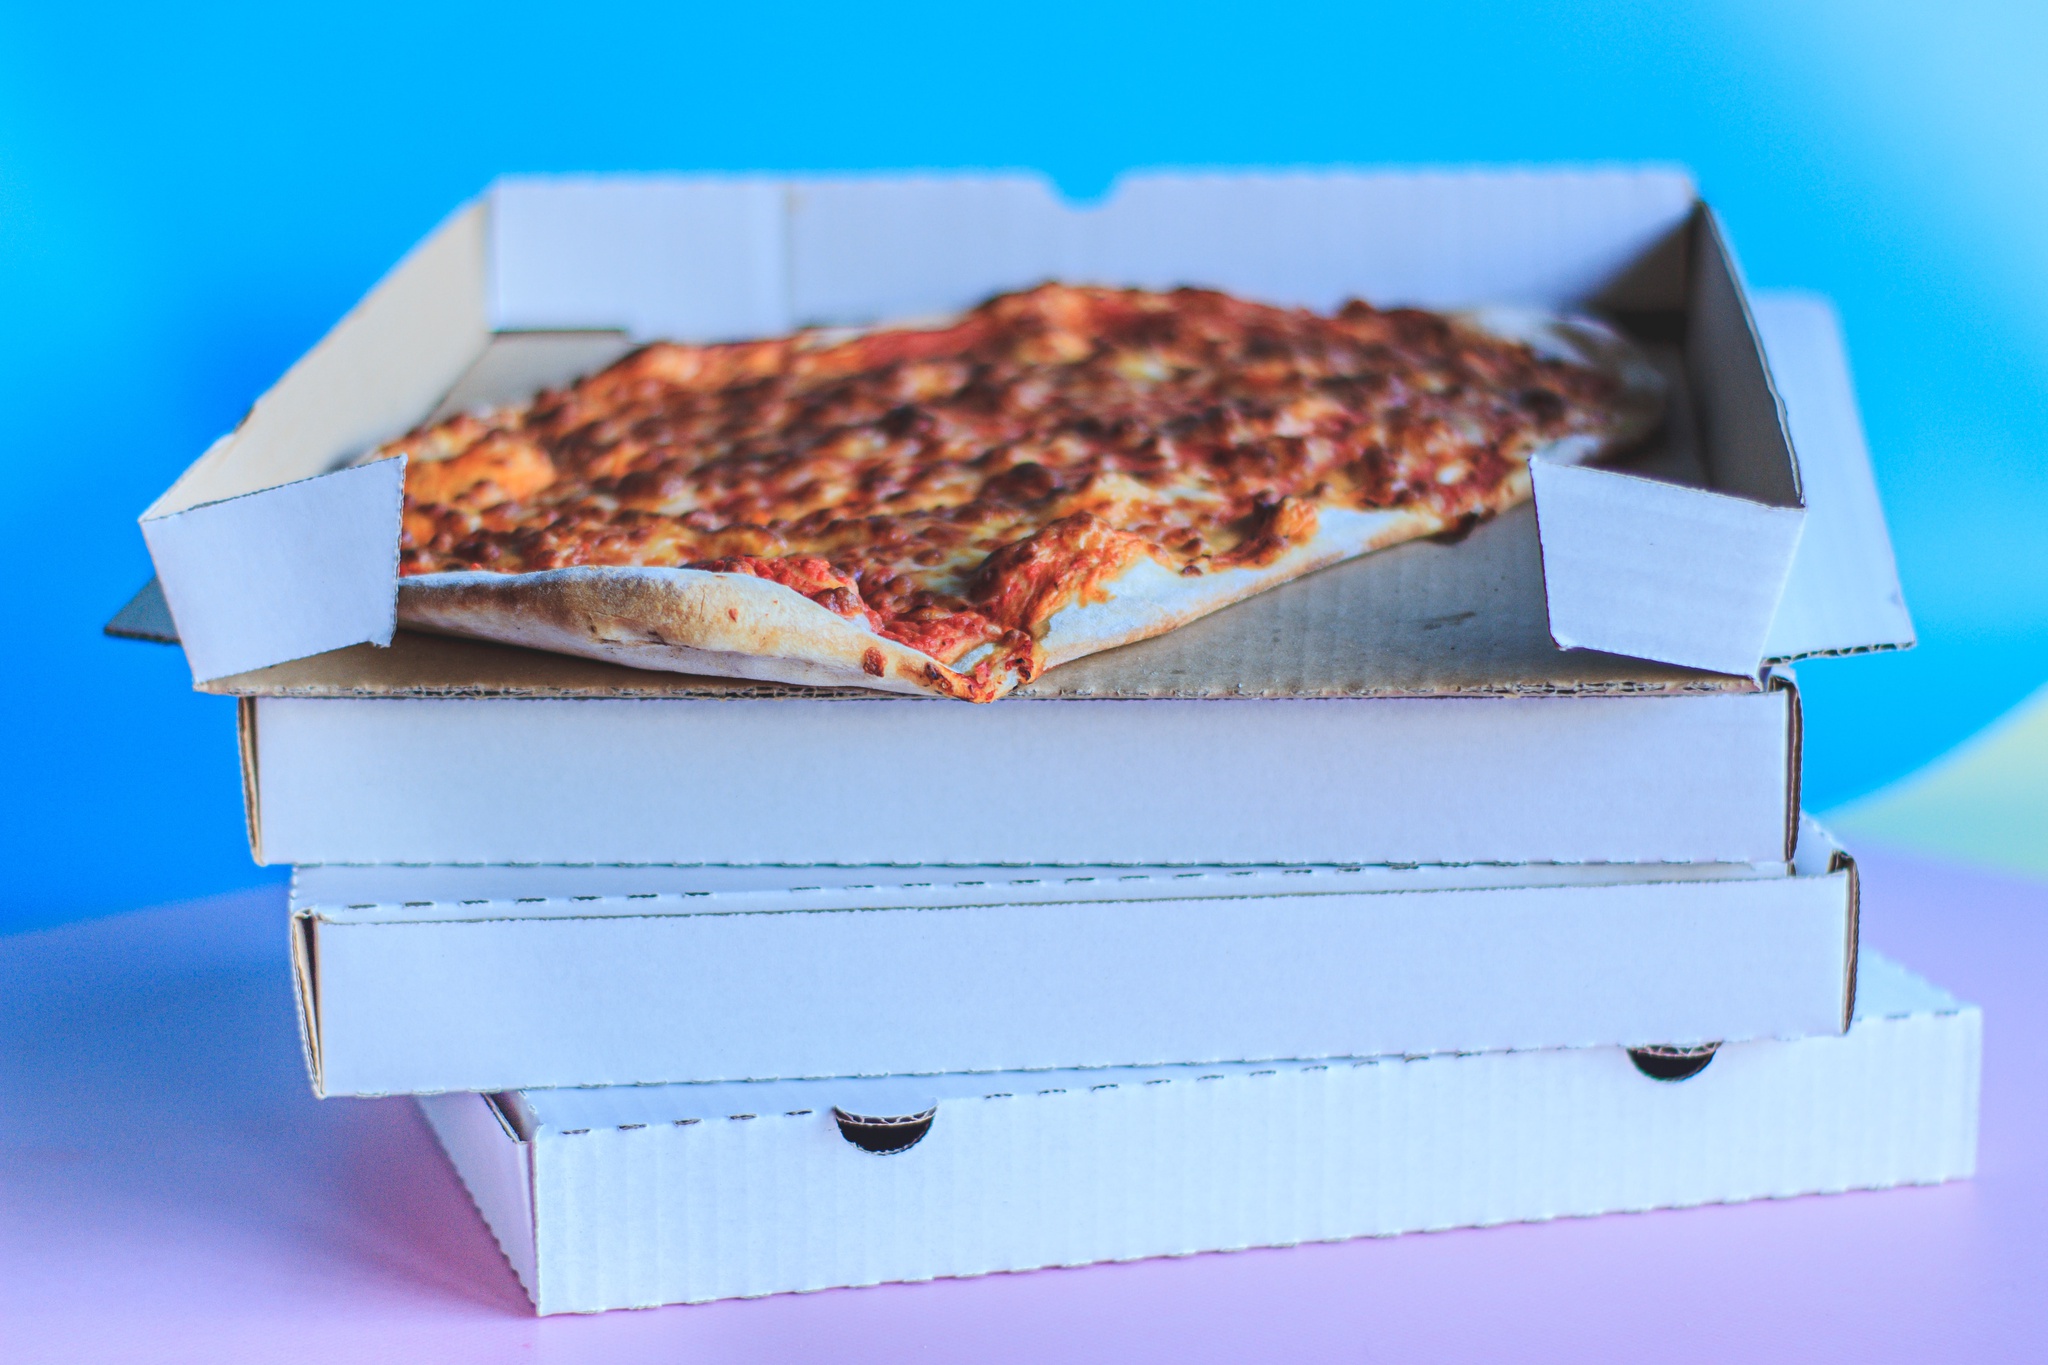 Caixa de pizza engordurada é reciclável? - AMA - Agentes do Meio Ambiente